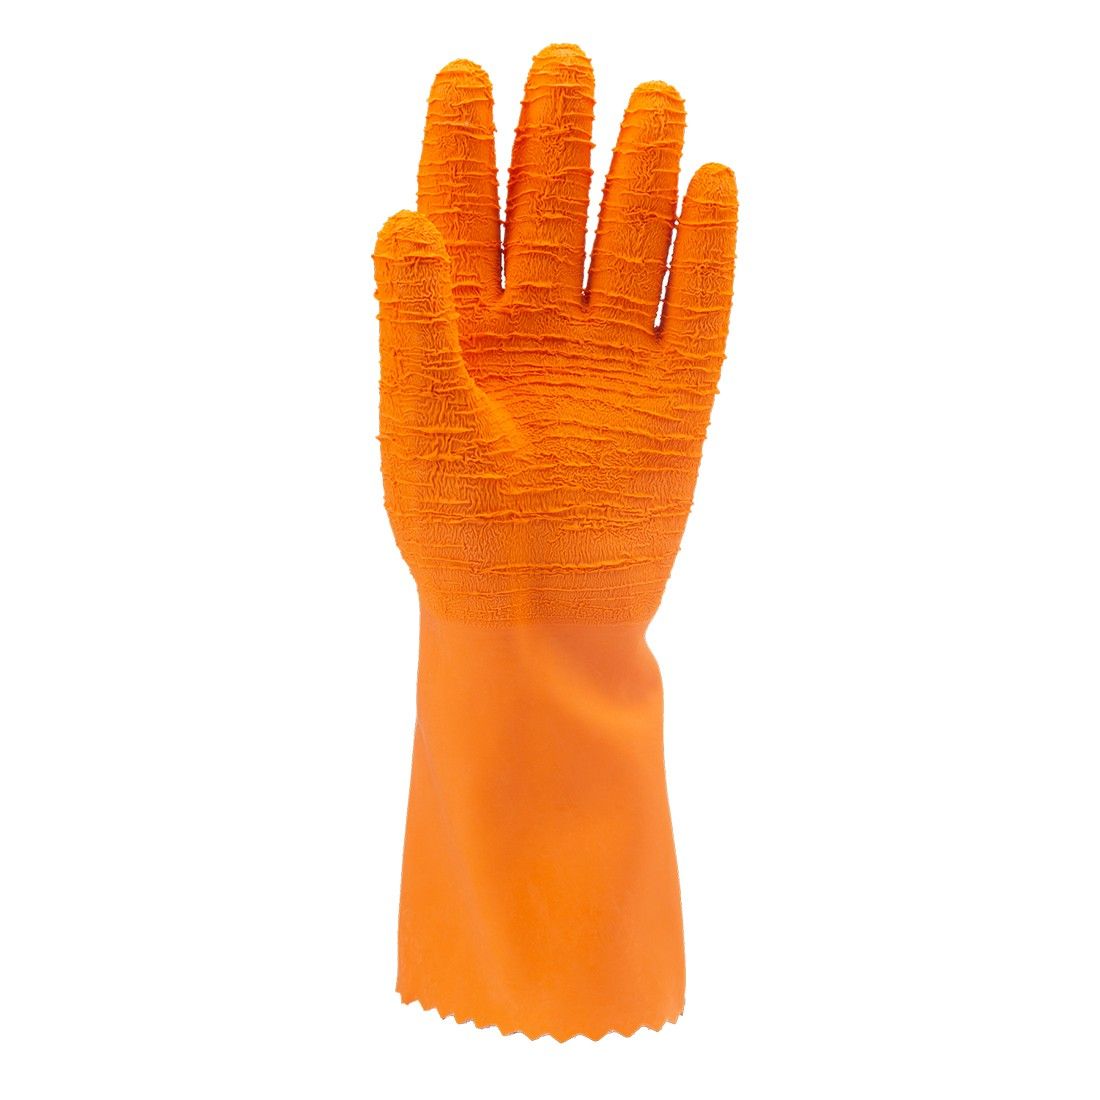 Coverguard - Gants de protection chimique orange en latex crêpé